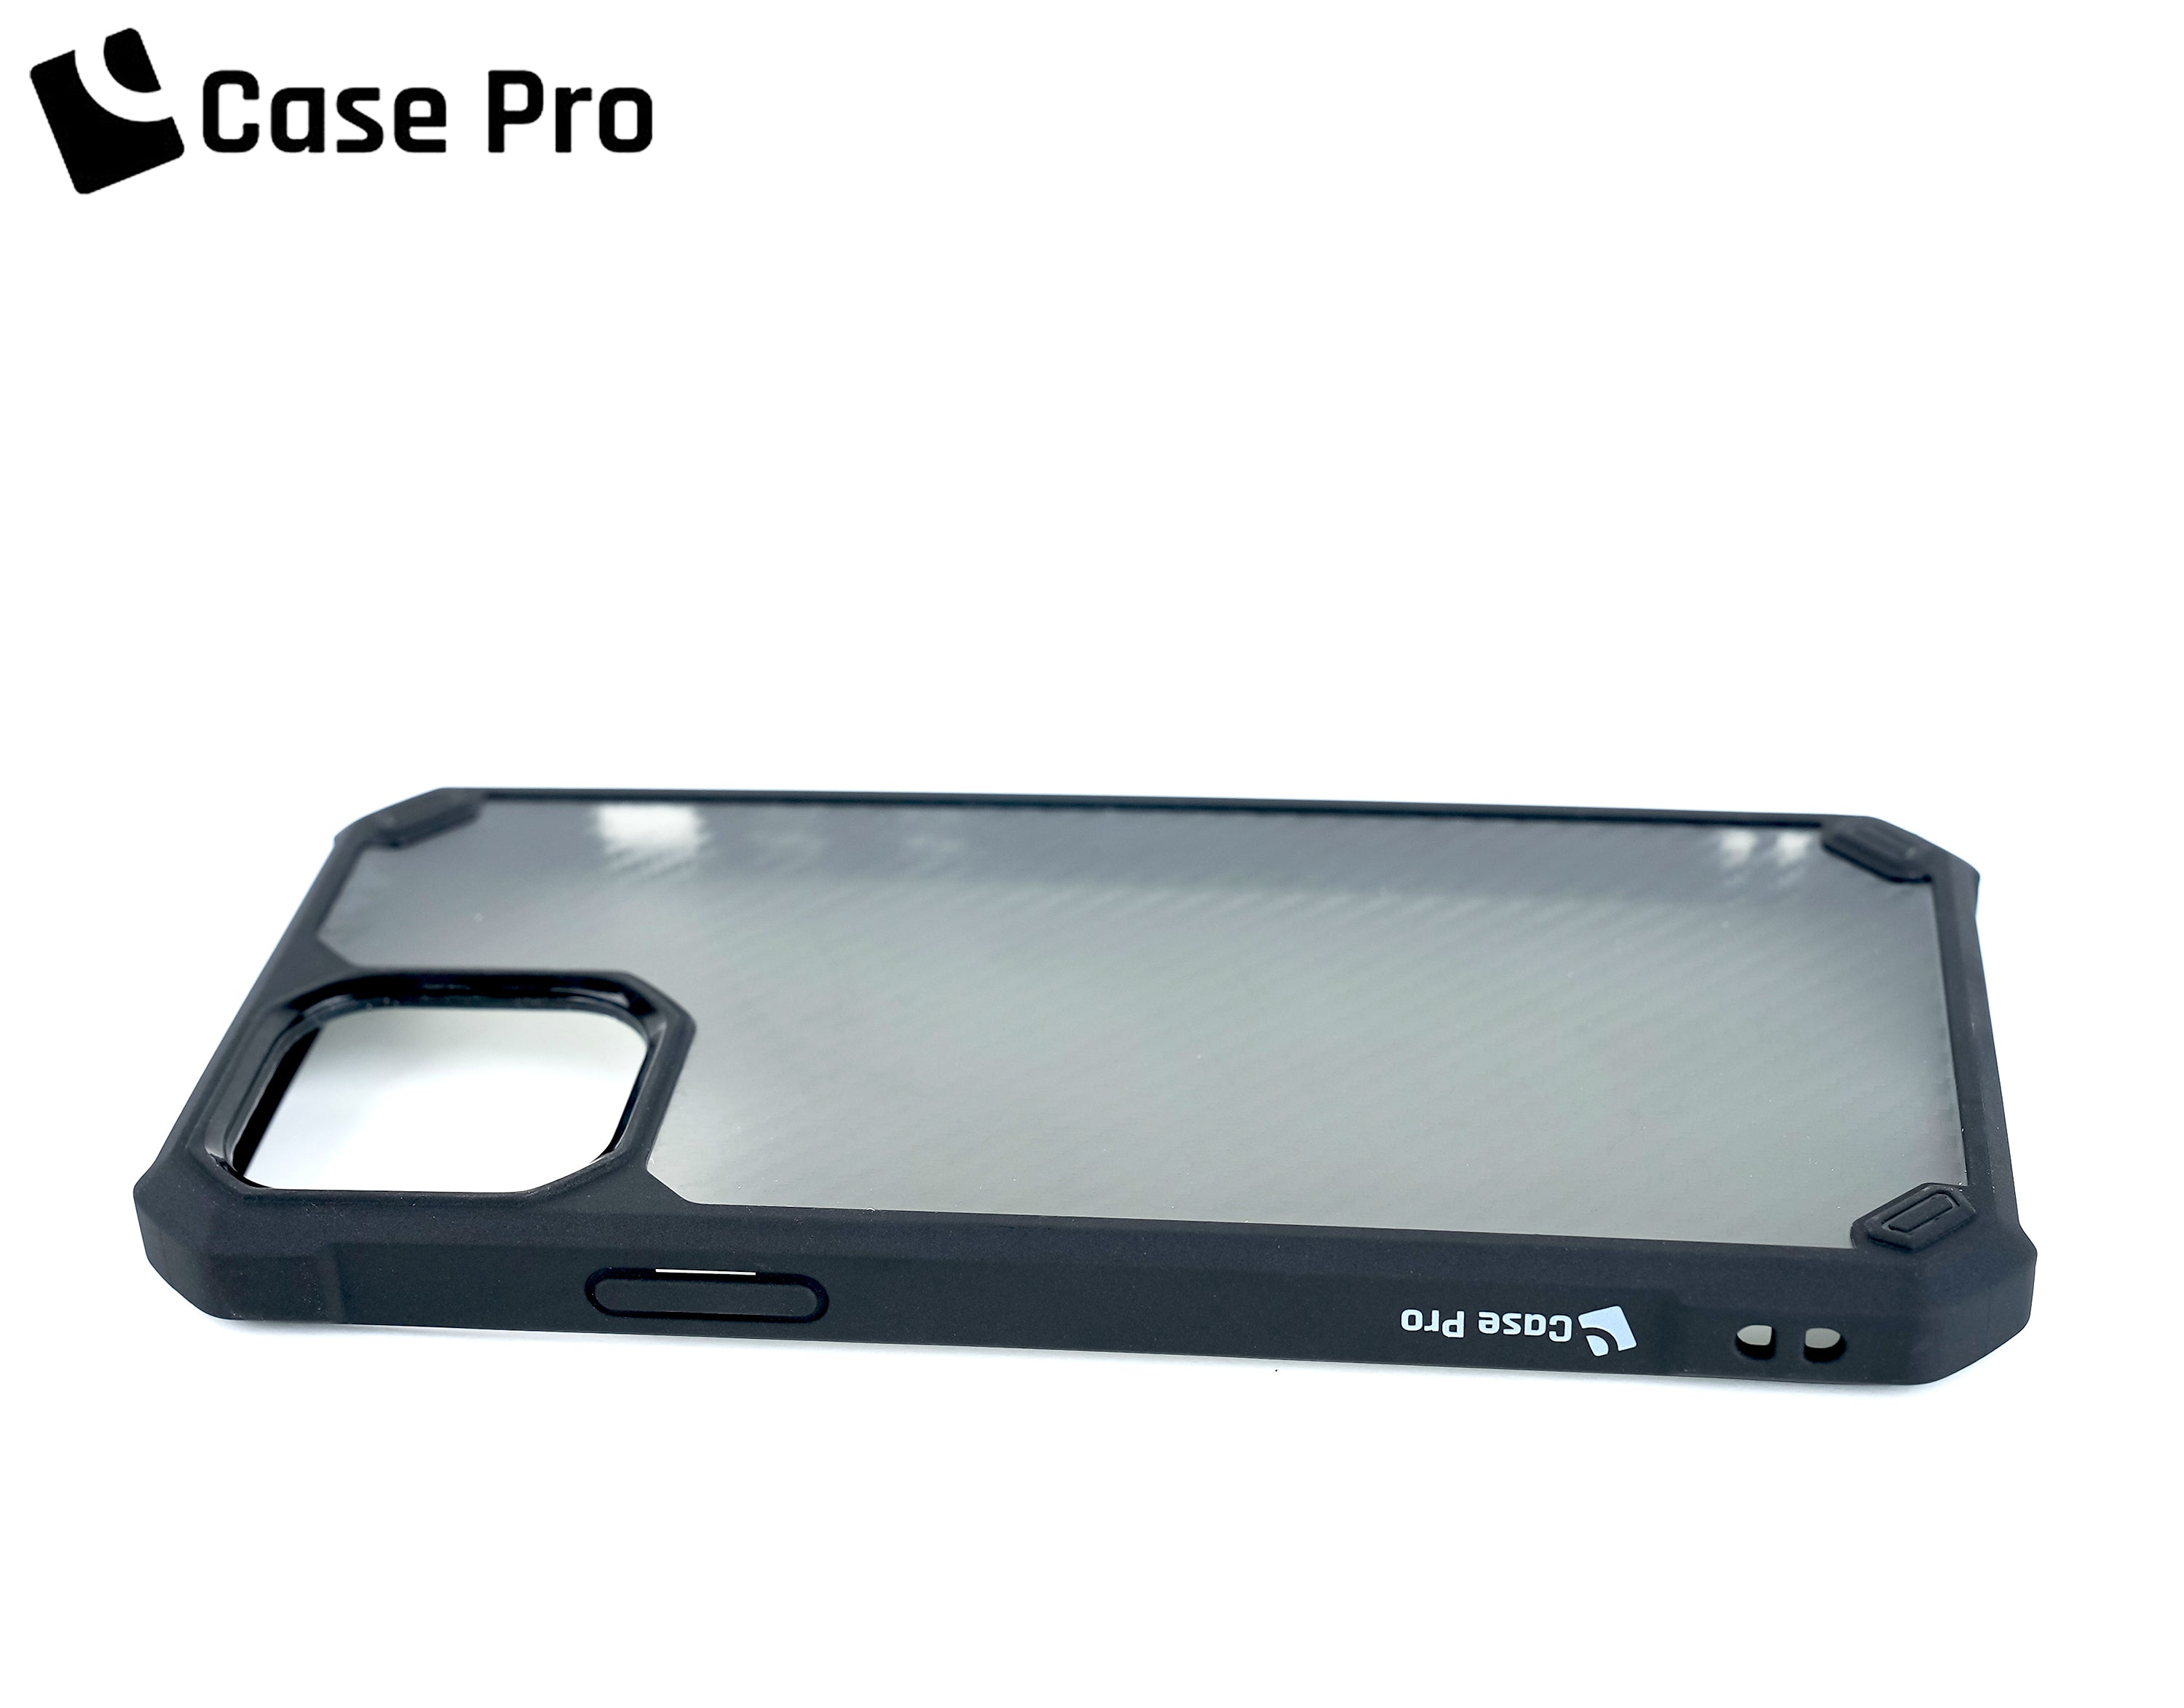 CASE PRO iPhone 12 Pro Case (Element)